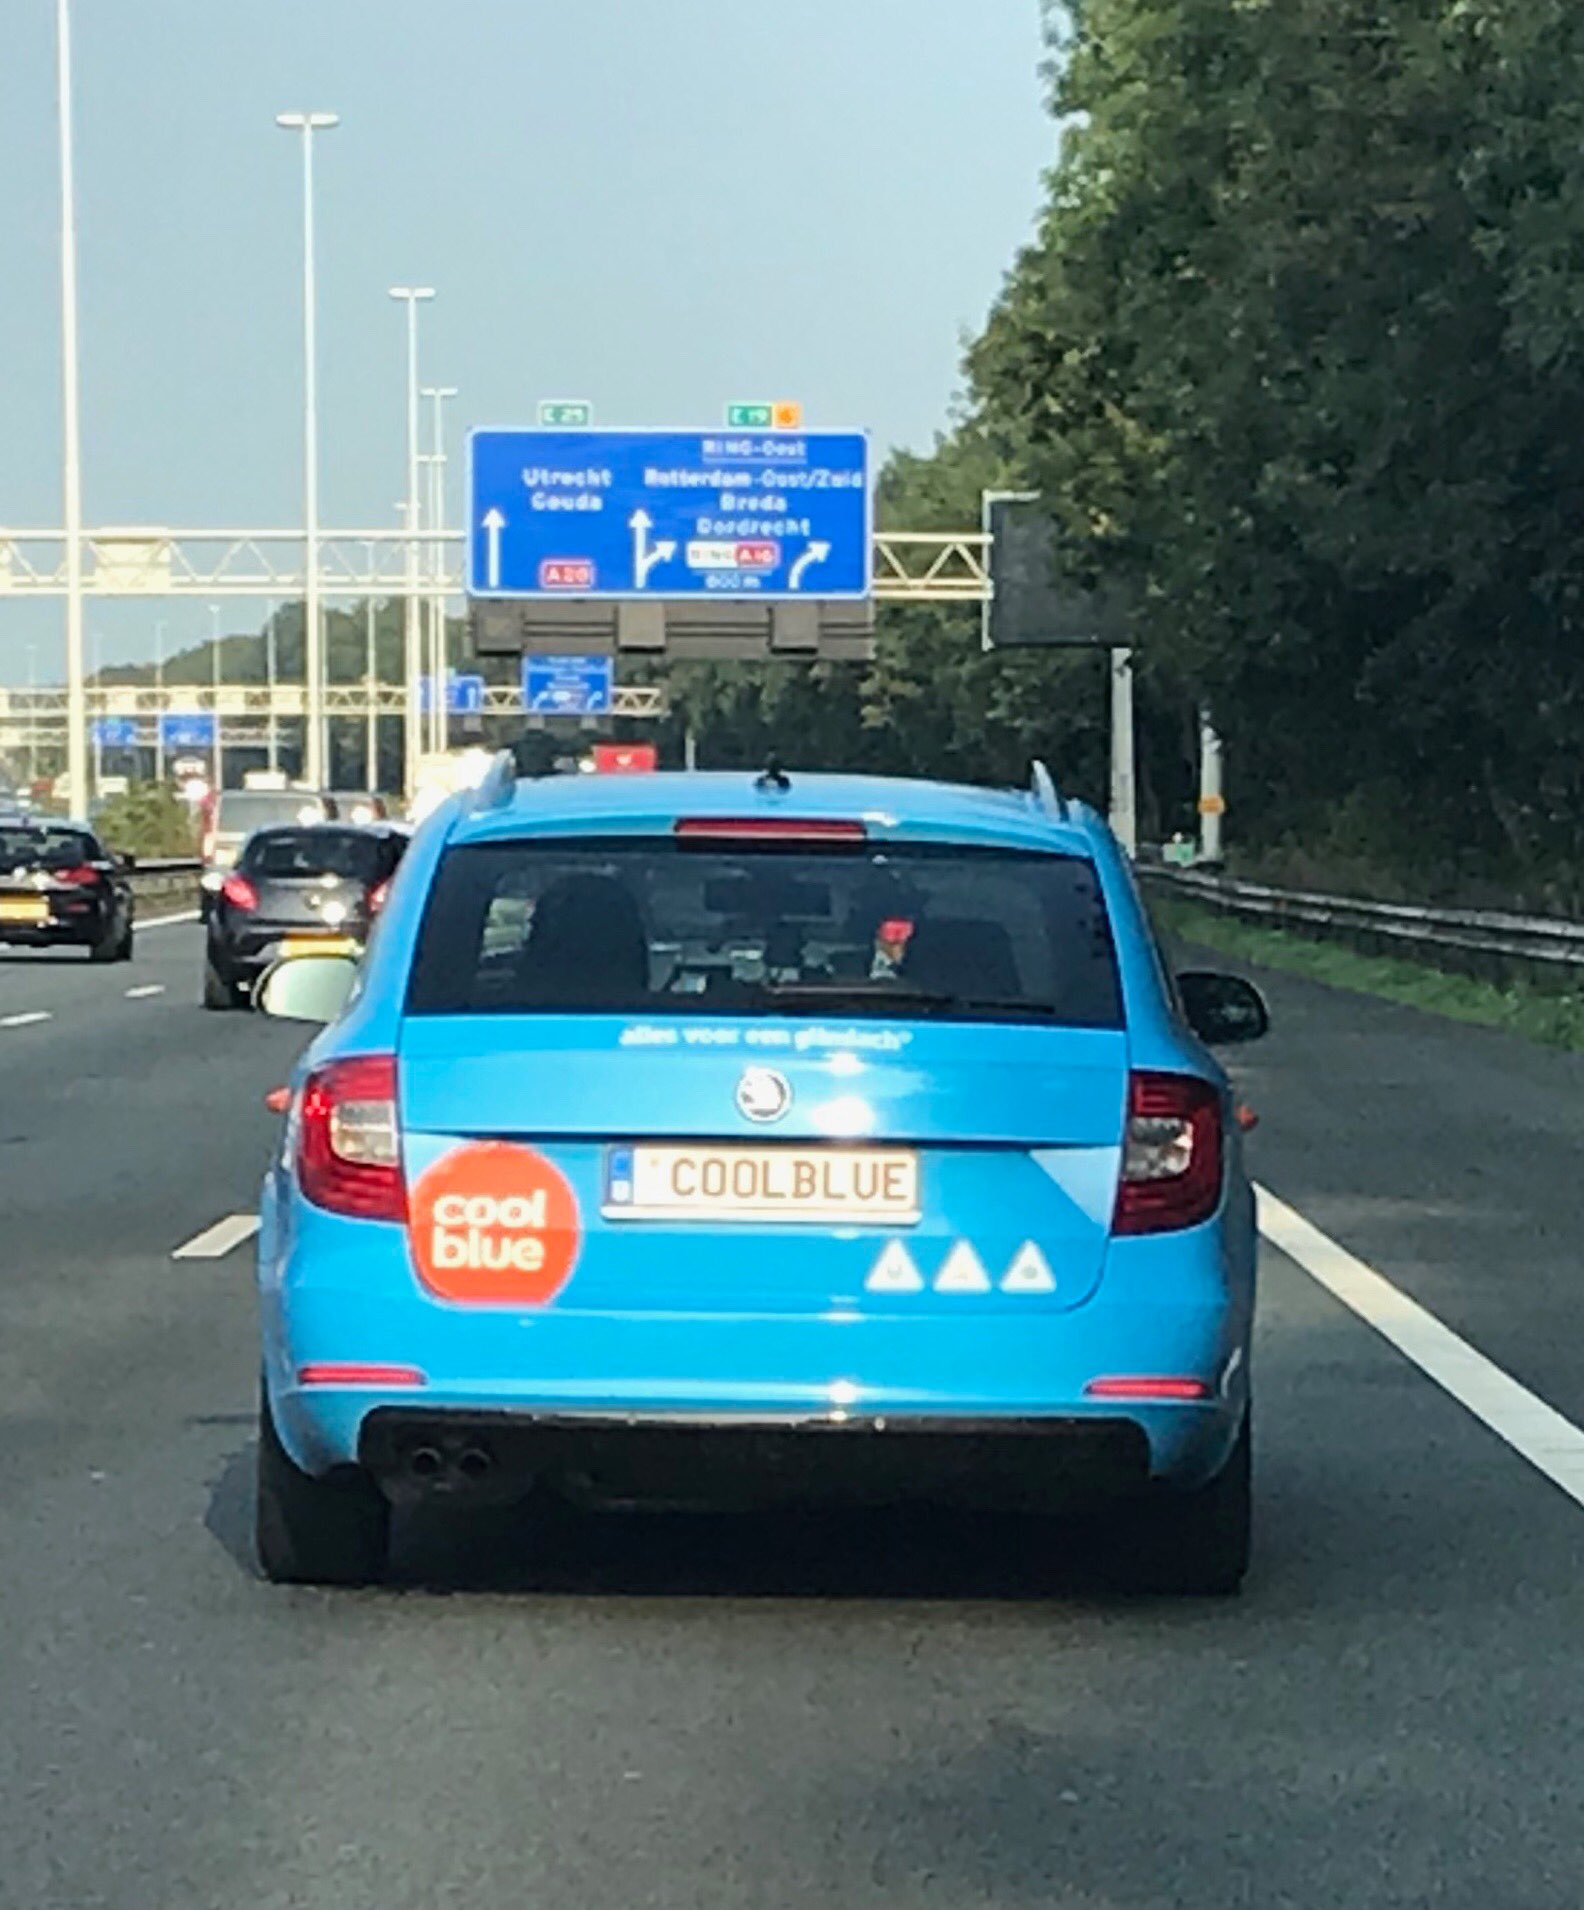 Achtervoegsel ritme gaan beslissen Coolblue on Twitter: "@Jeroen_vdBurg En ook nog eens super handig, voor als  we nog niet te herkennen waren aan de knalblauwe auto en de logo's! Heb je  de achtervolging ingezet richting het